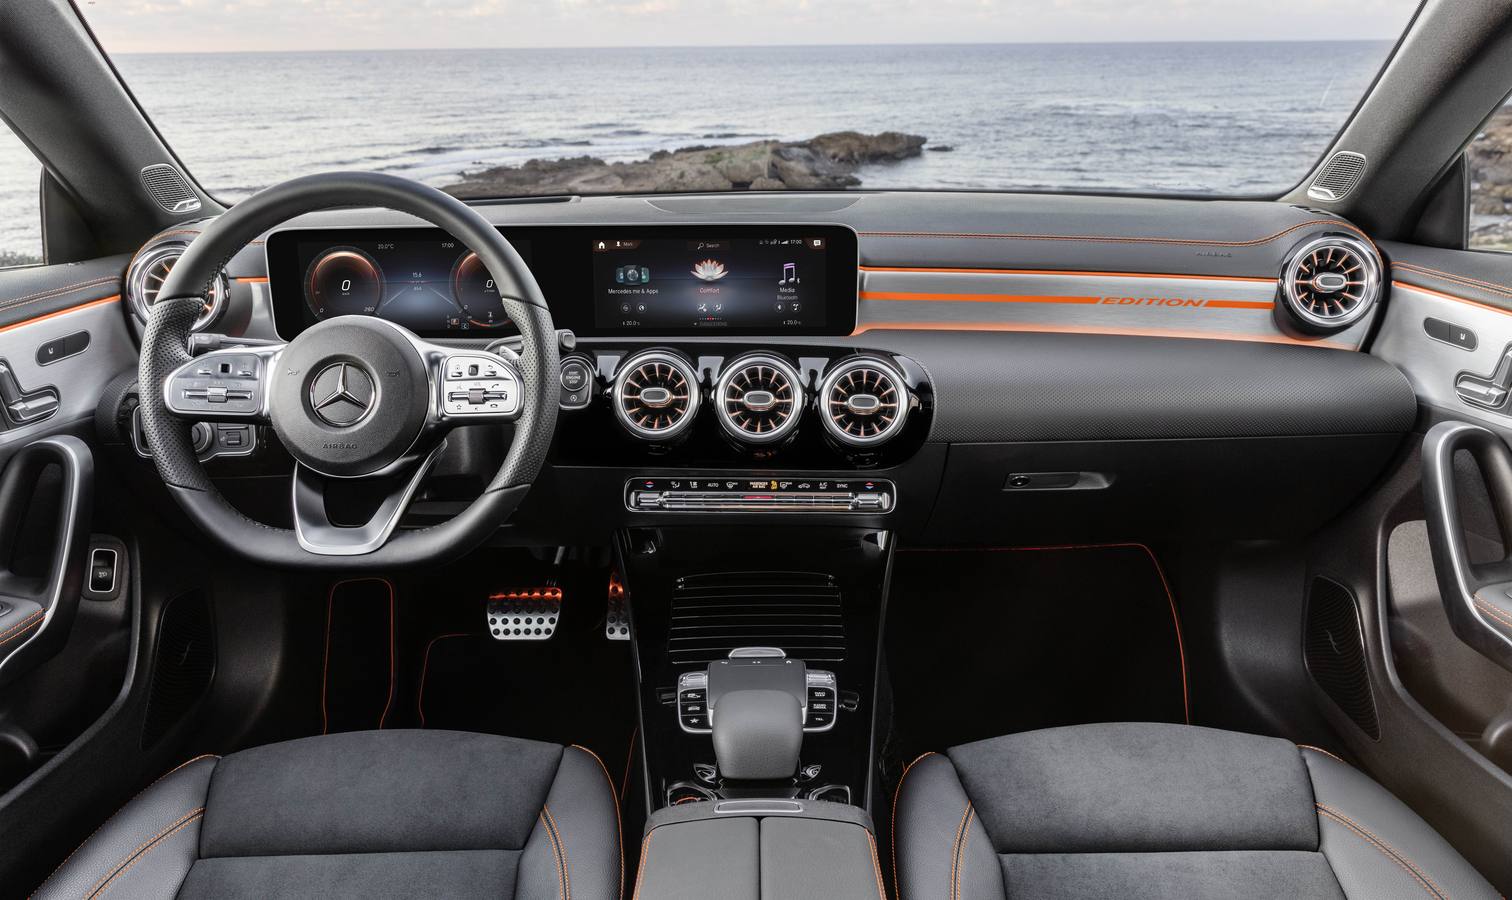 En mayo comienza a venderse el nuevo Mercedes CLA, el cupé compacto de cuatro puertas que se acaba de presentar en Las Vegas. El modelo representa una de las bazas para reducir la edad media del cliente habitual del fabricante de la estrella.